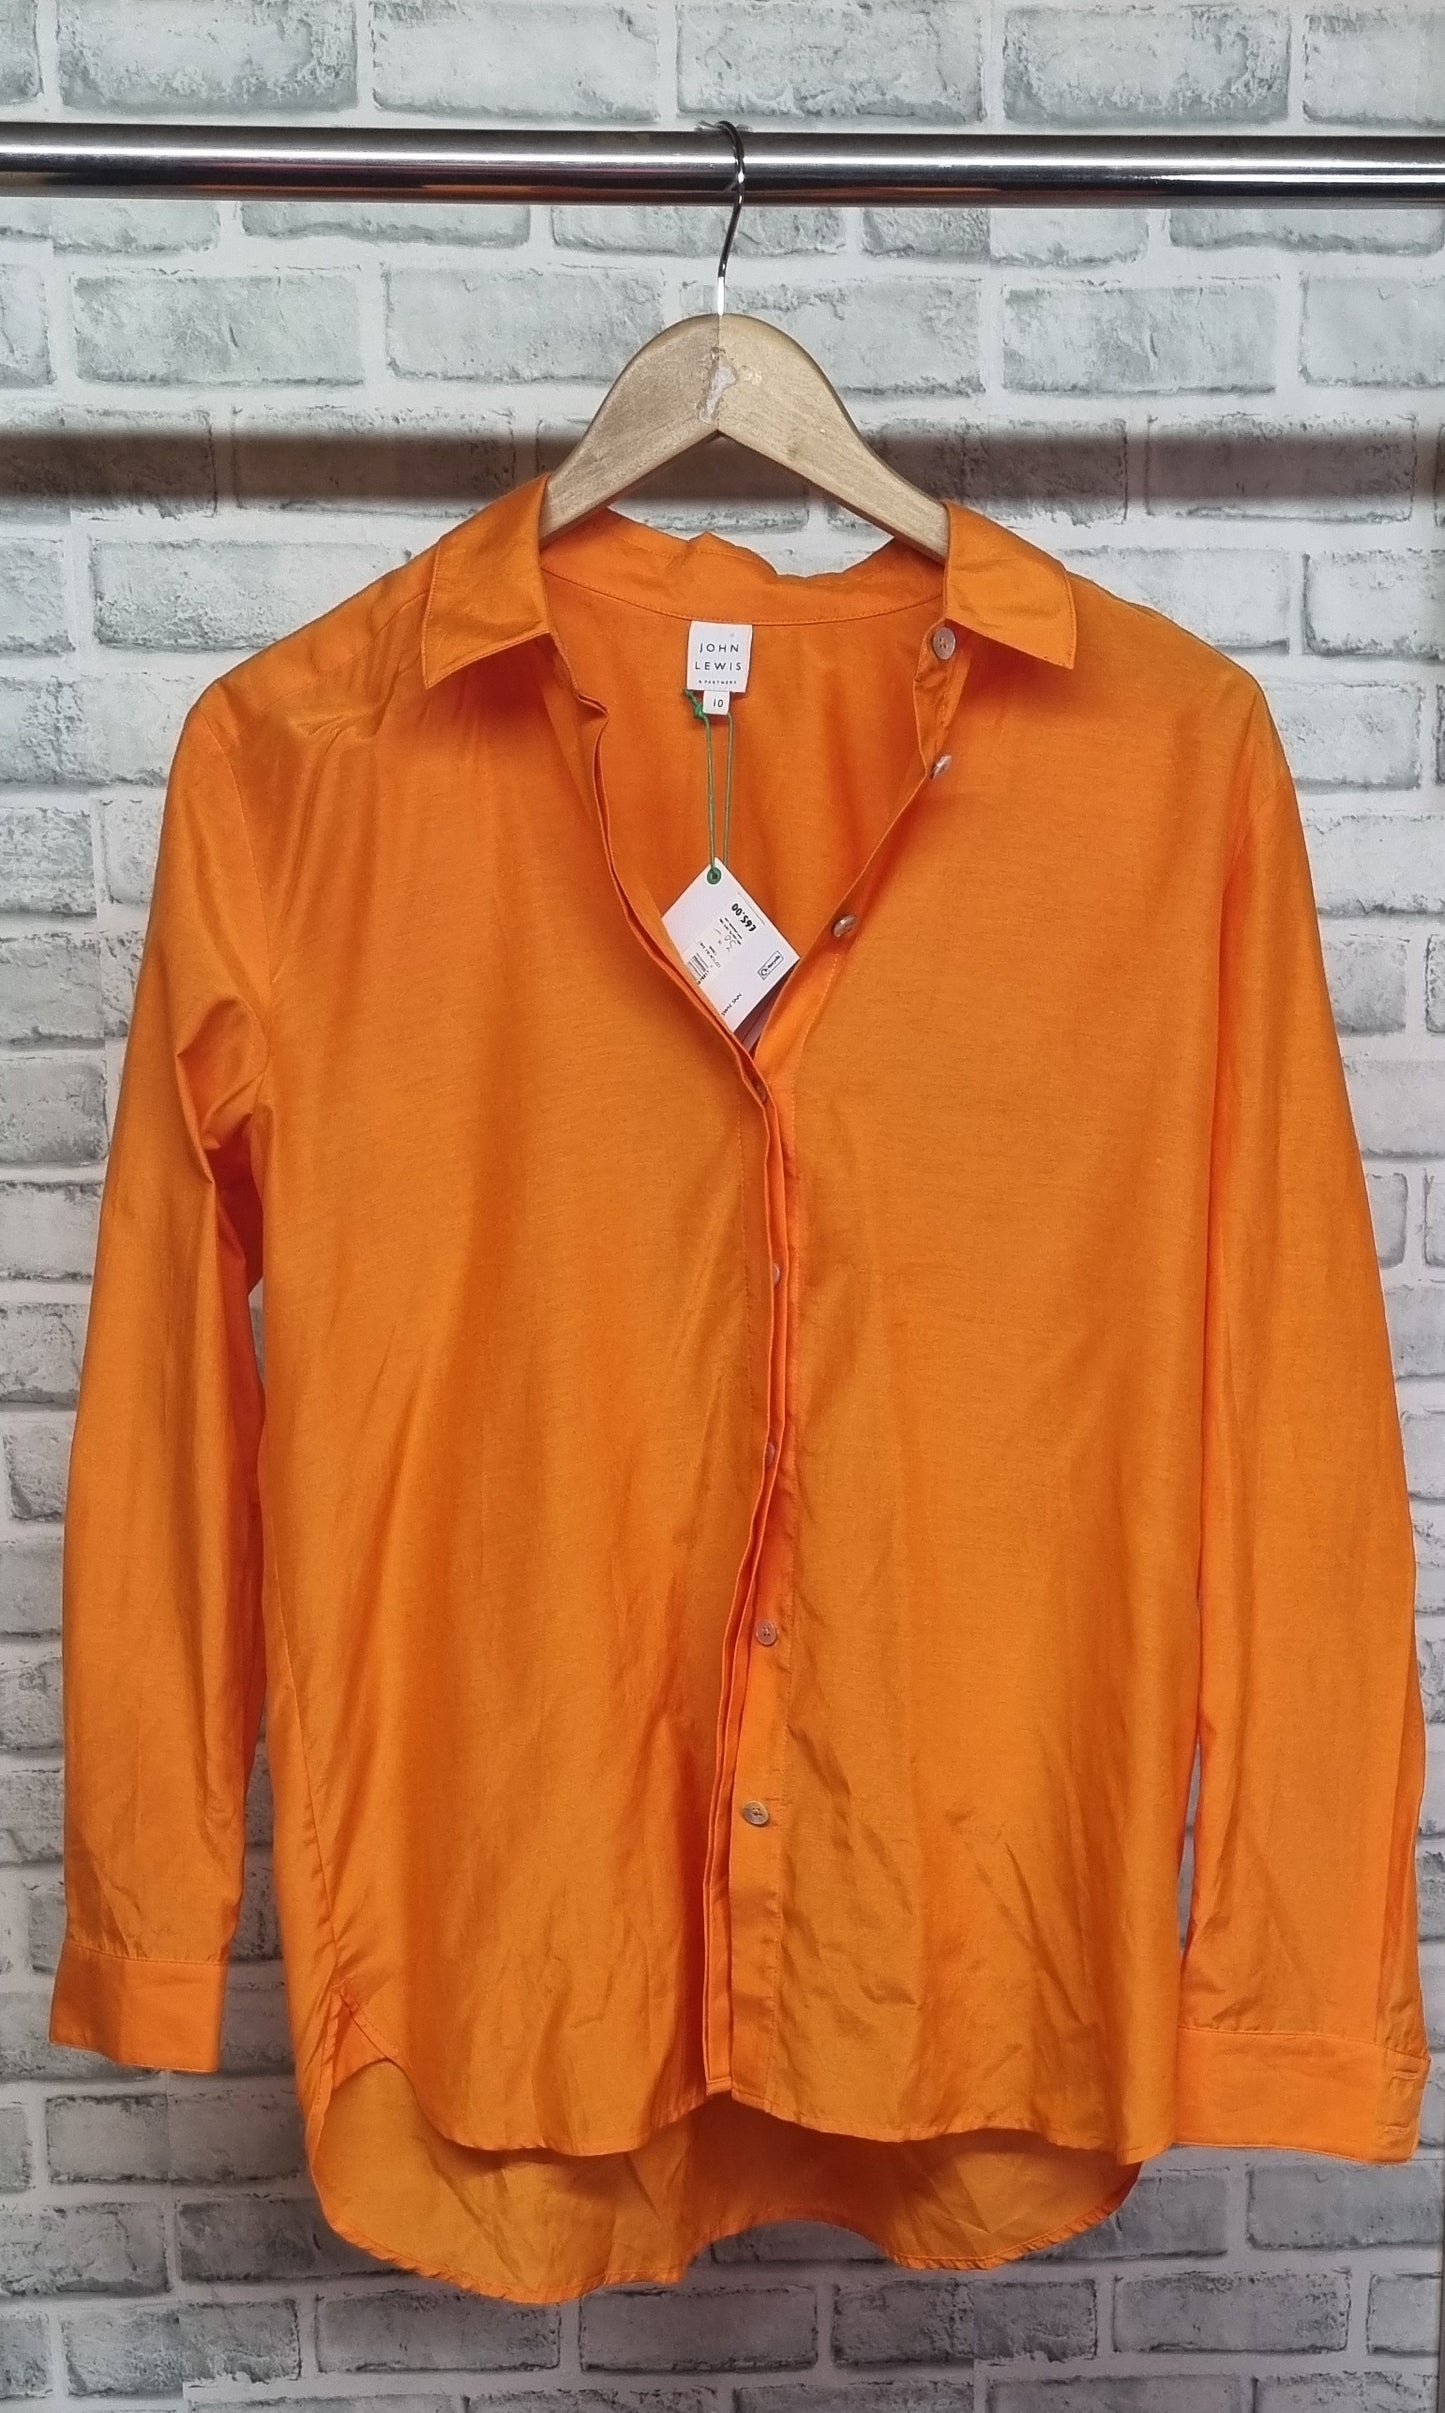 John Lewis Orange Shirt Size 10 BNWT